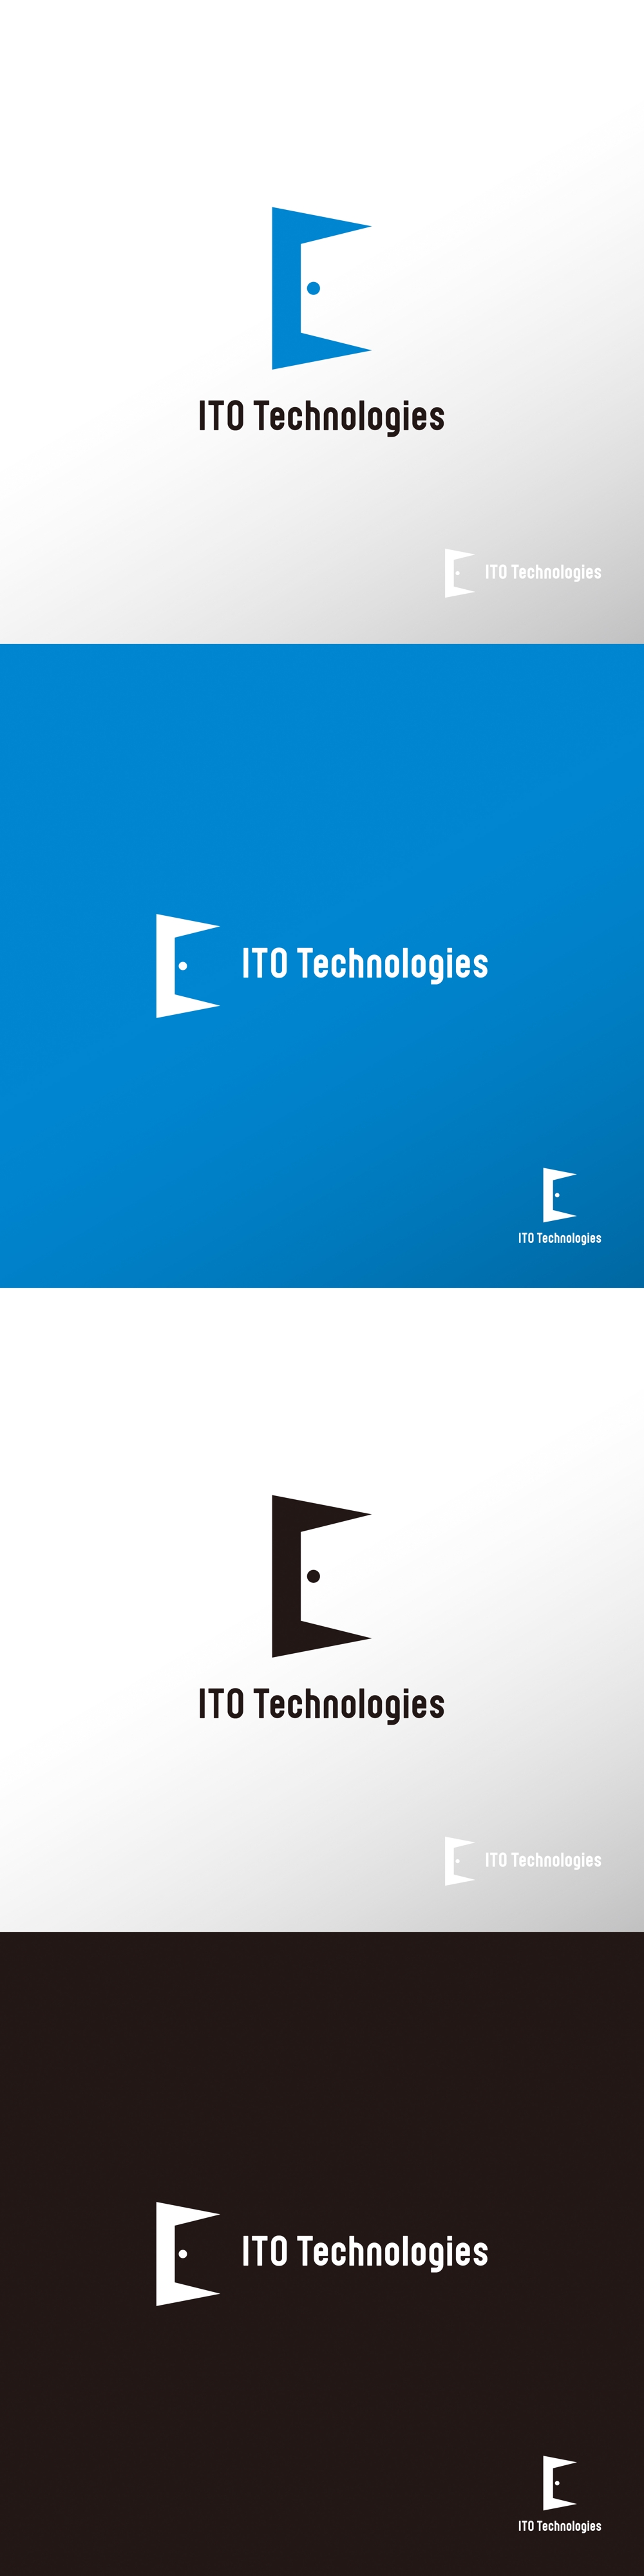 IT_ITO Technologies_ロゴA1.jpg